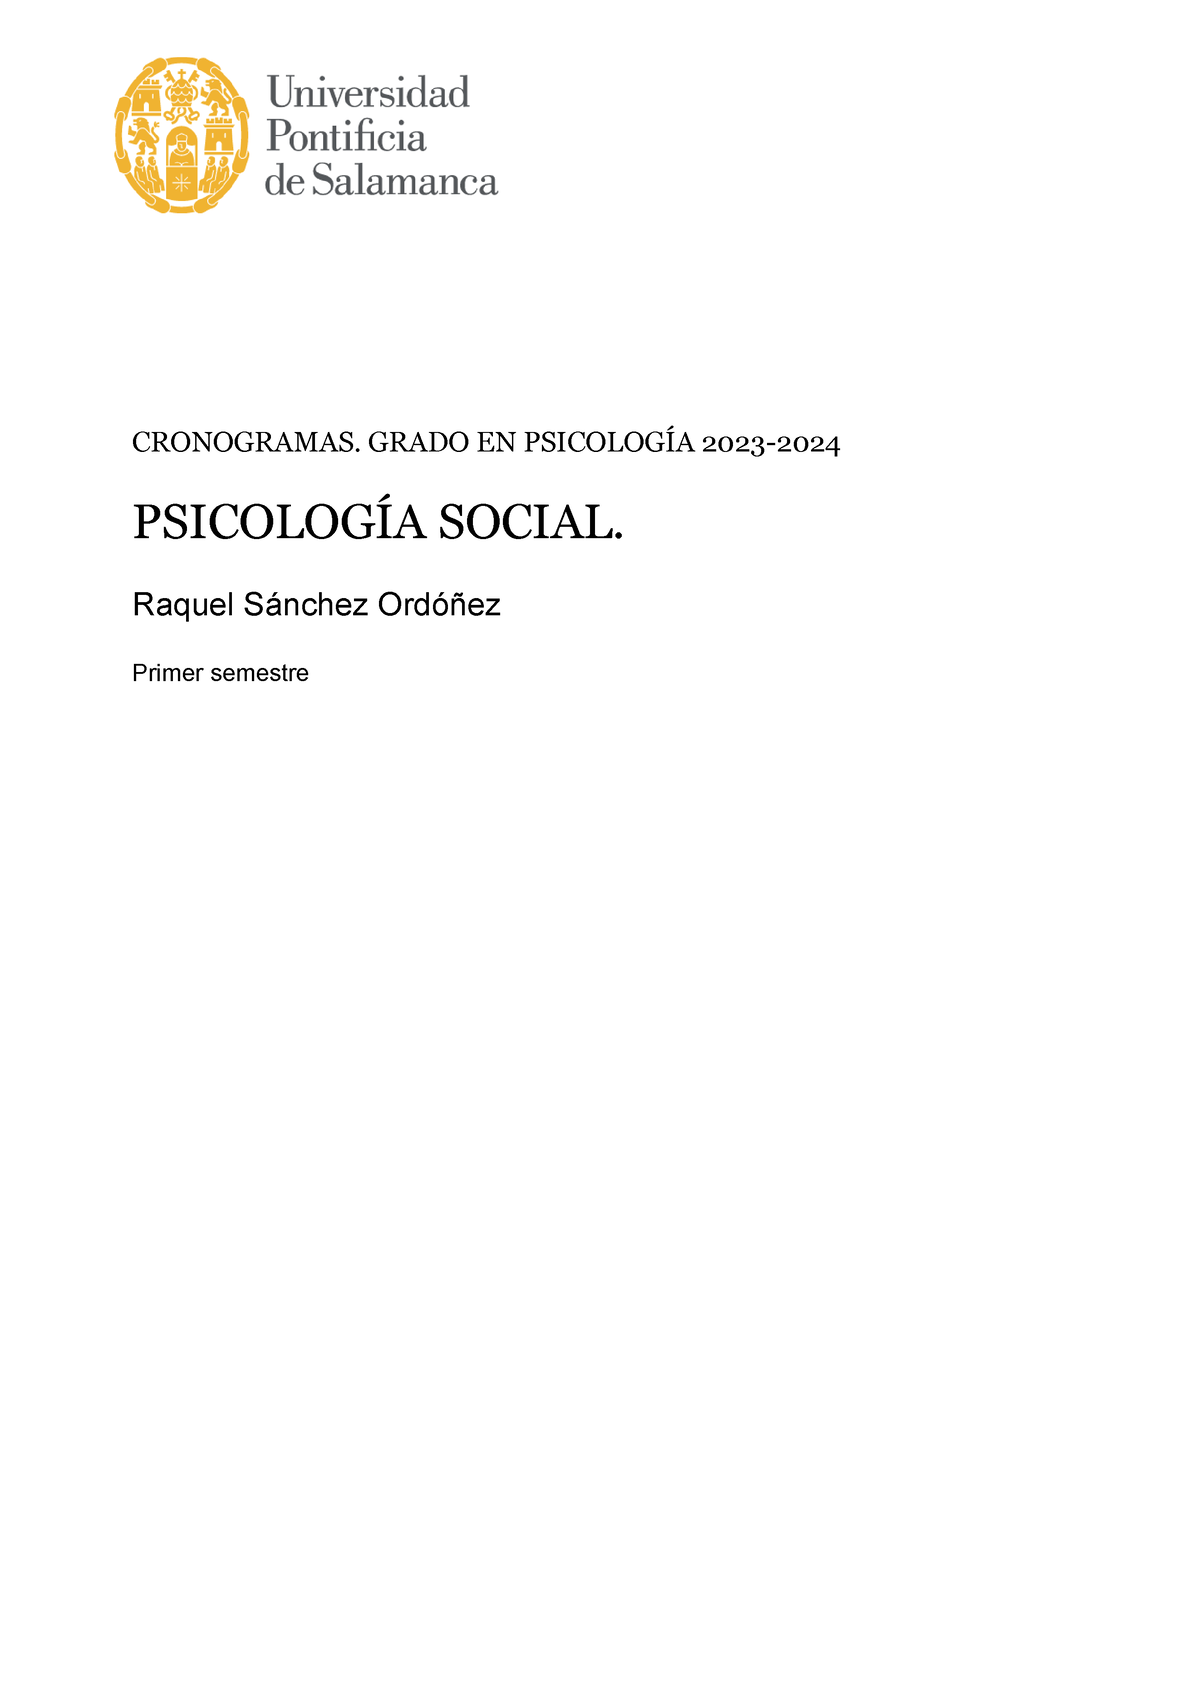 Psicolog A Social Primer Semestre Psicolog A Social Cronogramas Grado En Psicolog A